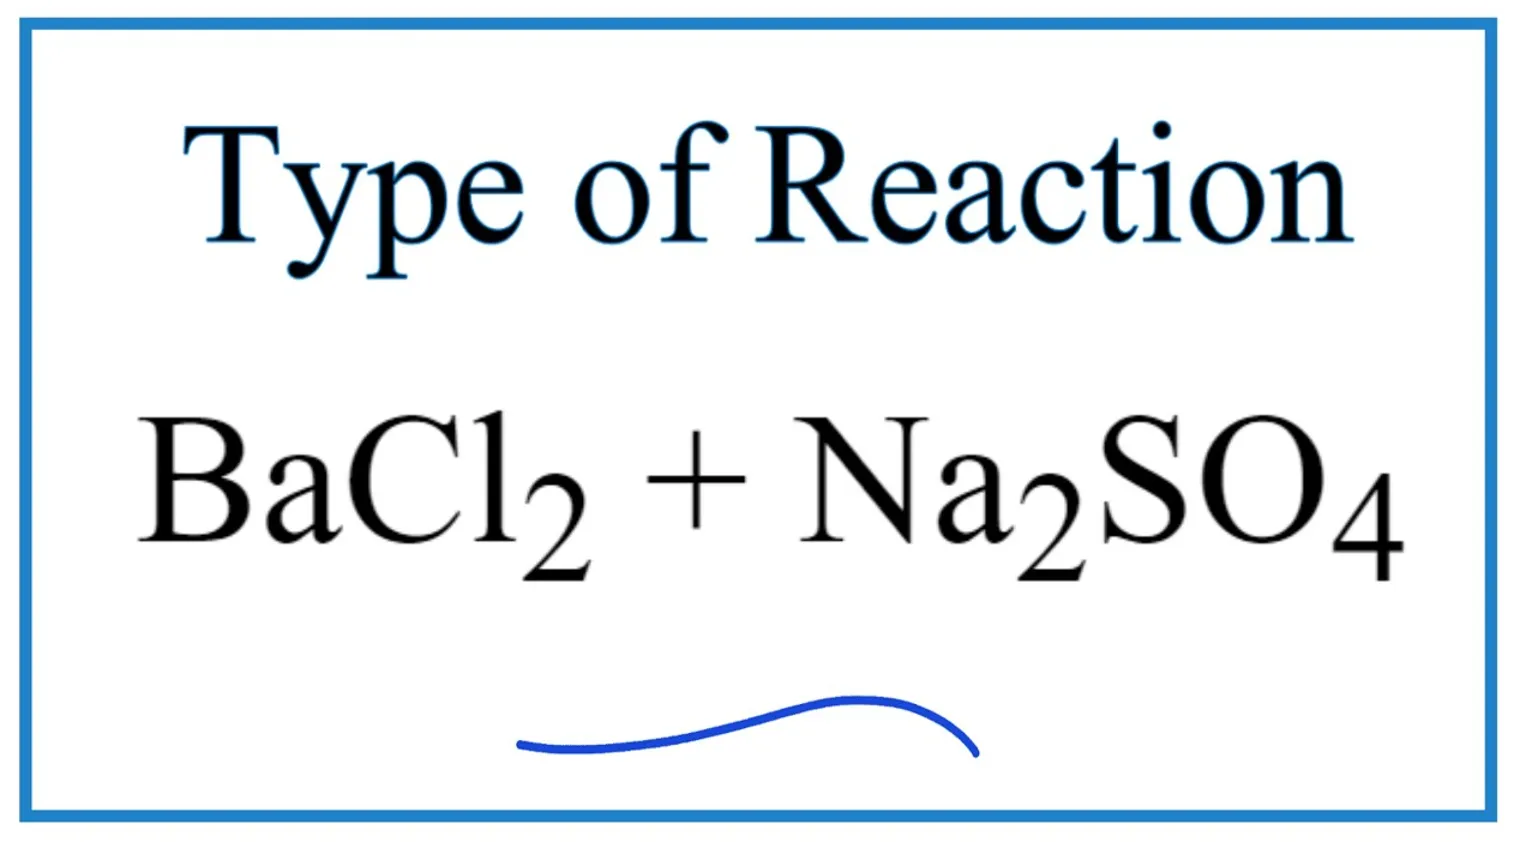 phản ứng bacl2 nahso4 → baso4 na2so4 hcl cách thức và ứng dụng